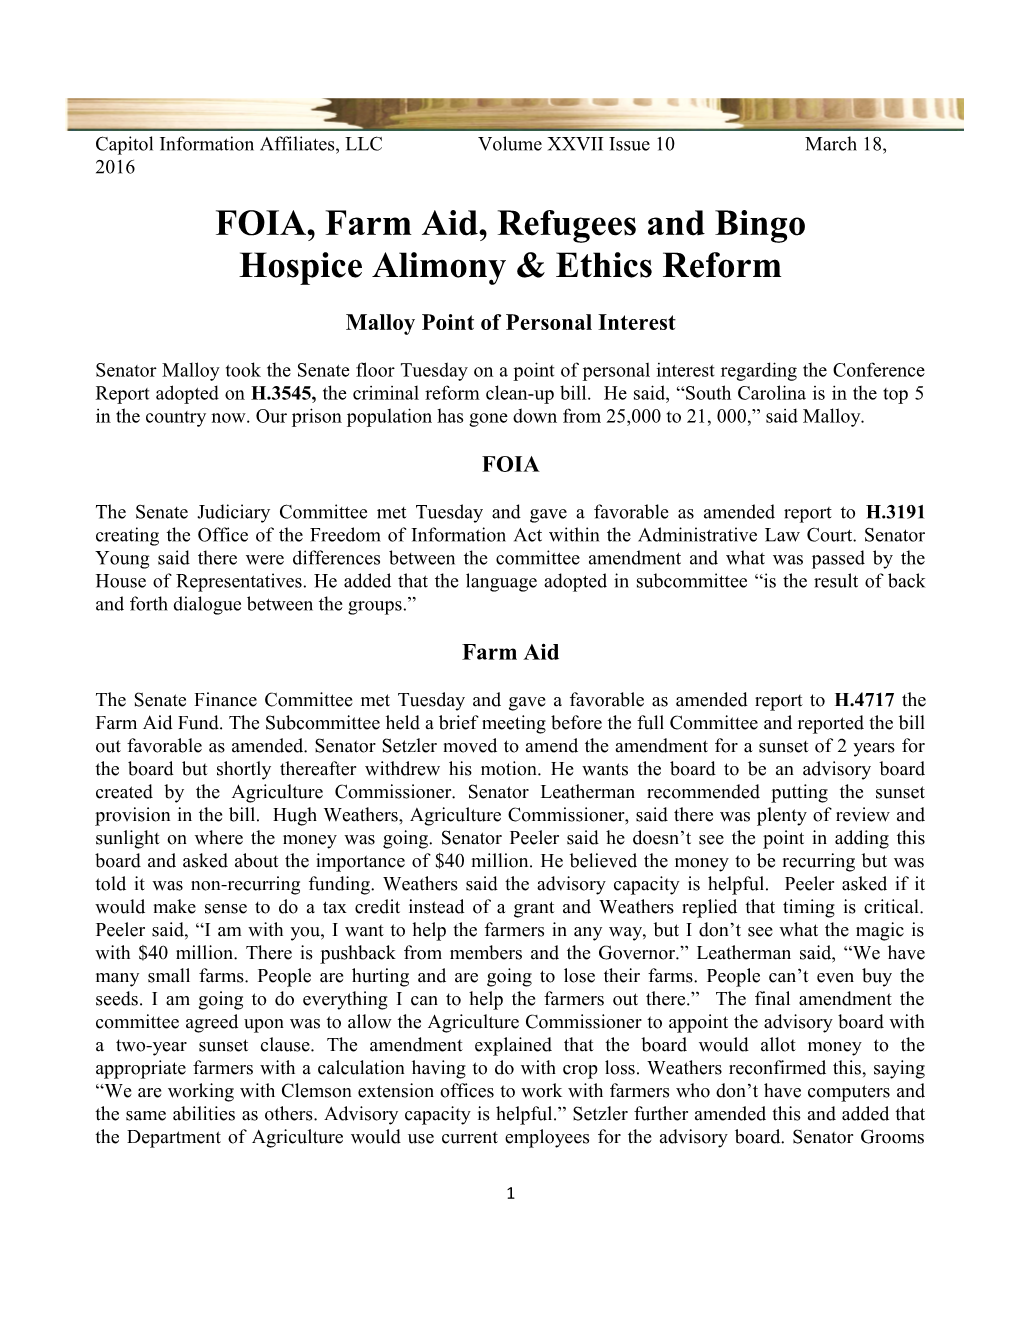 FOIA, Farm Aid, Refugees and Bingo